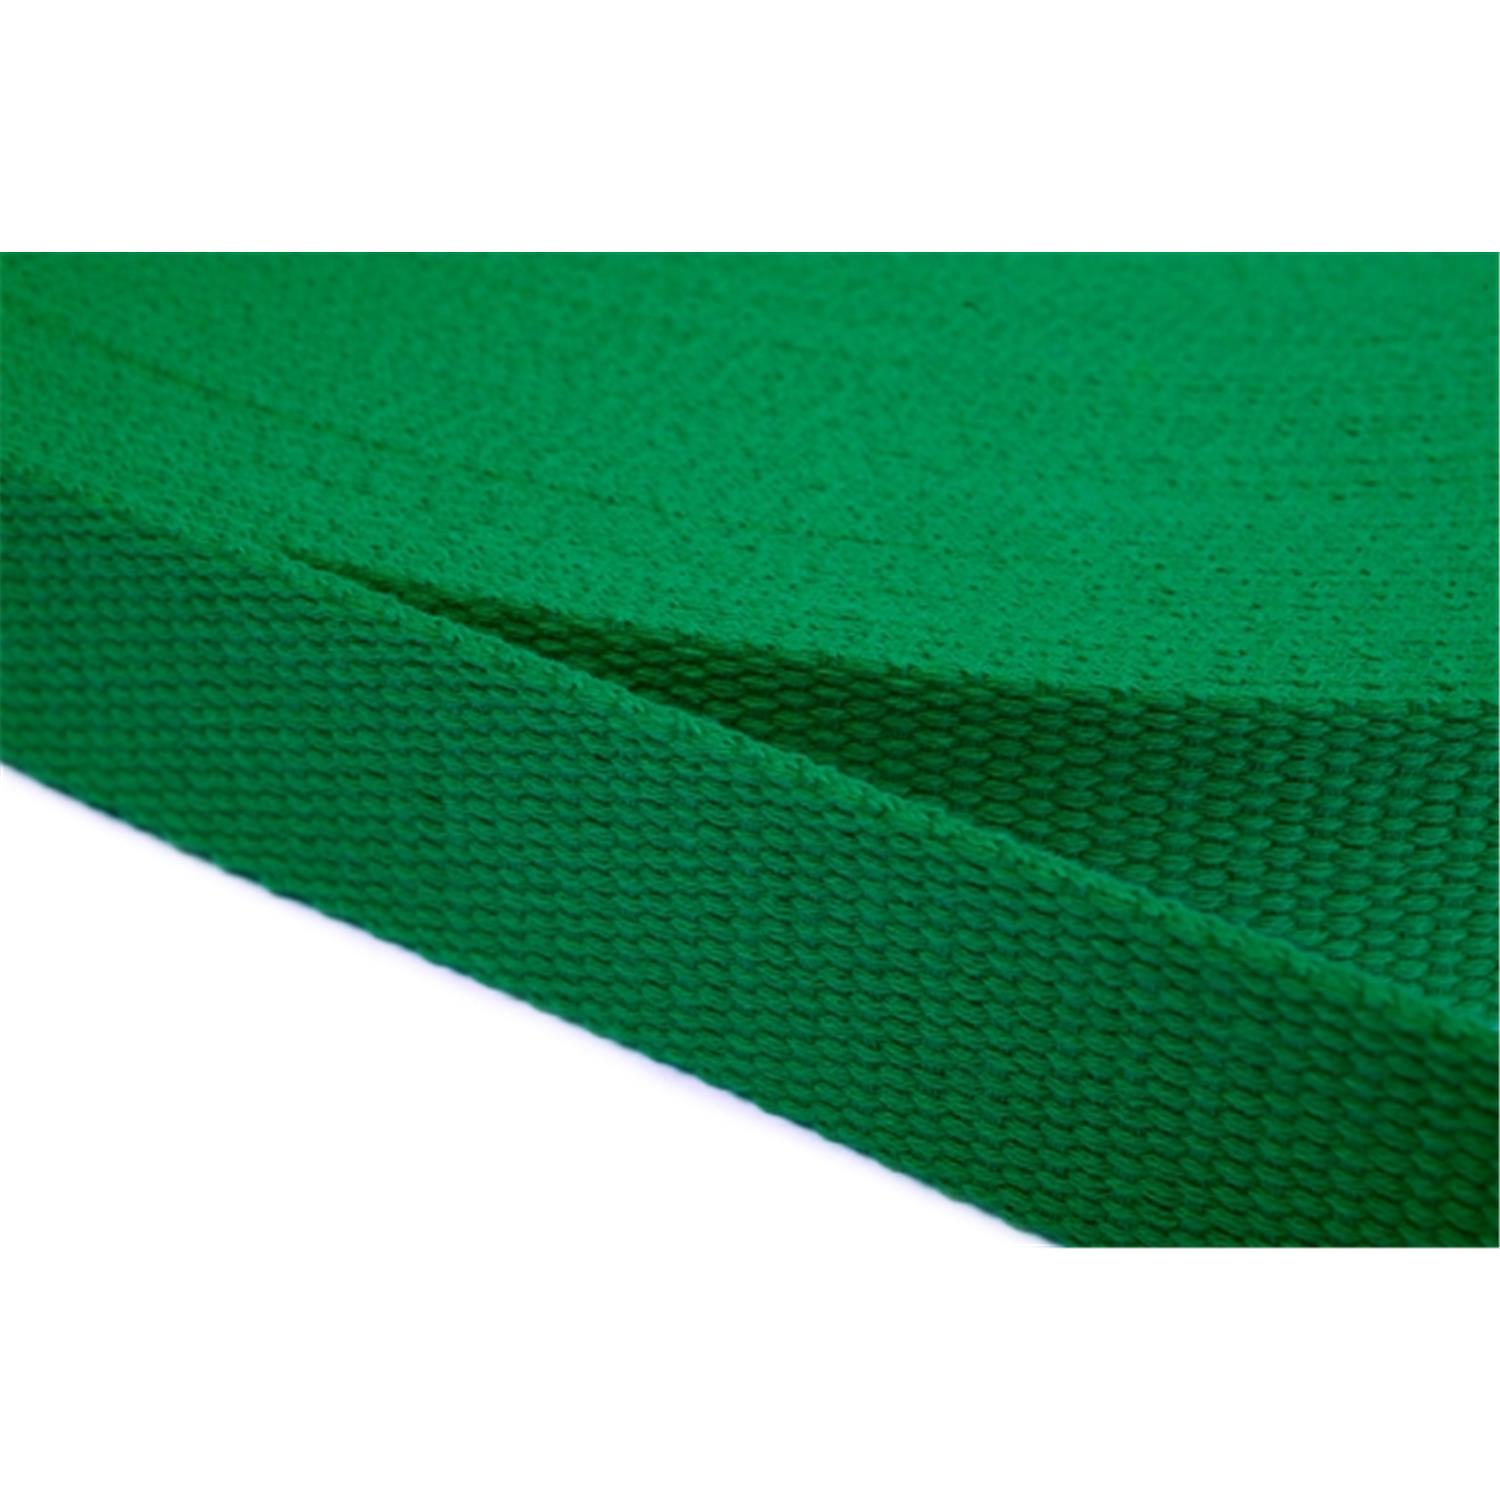 Gurtband aus Baumwolle 40mm in 20 Farben 16 - grün 6 Meter